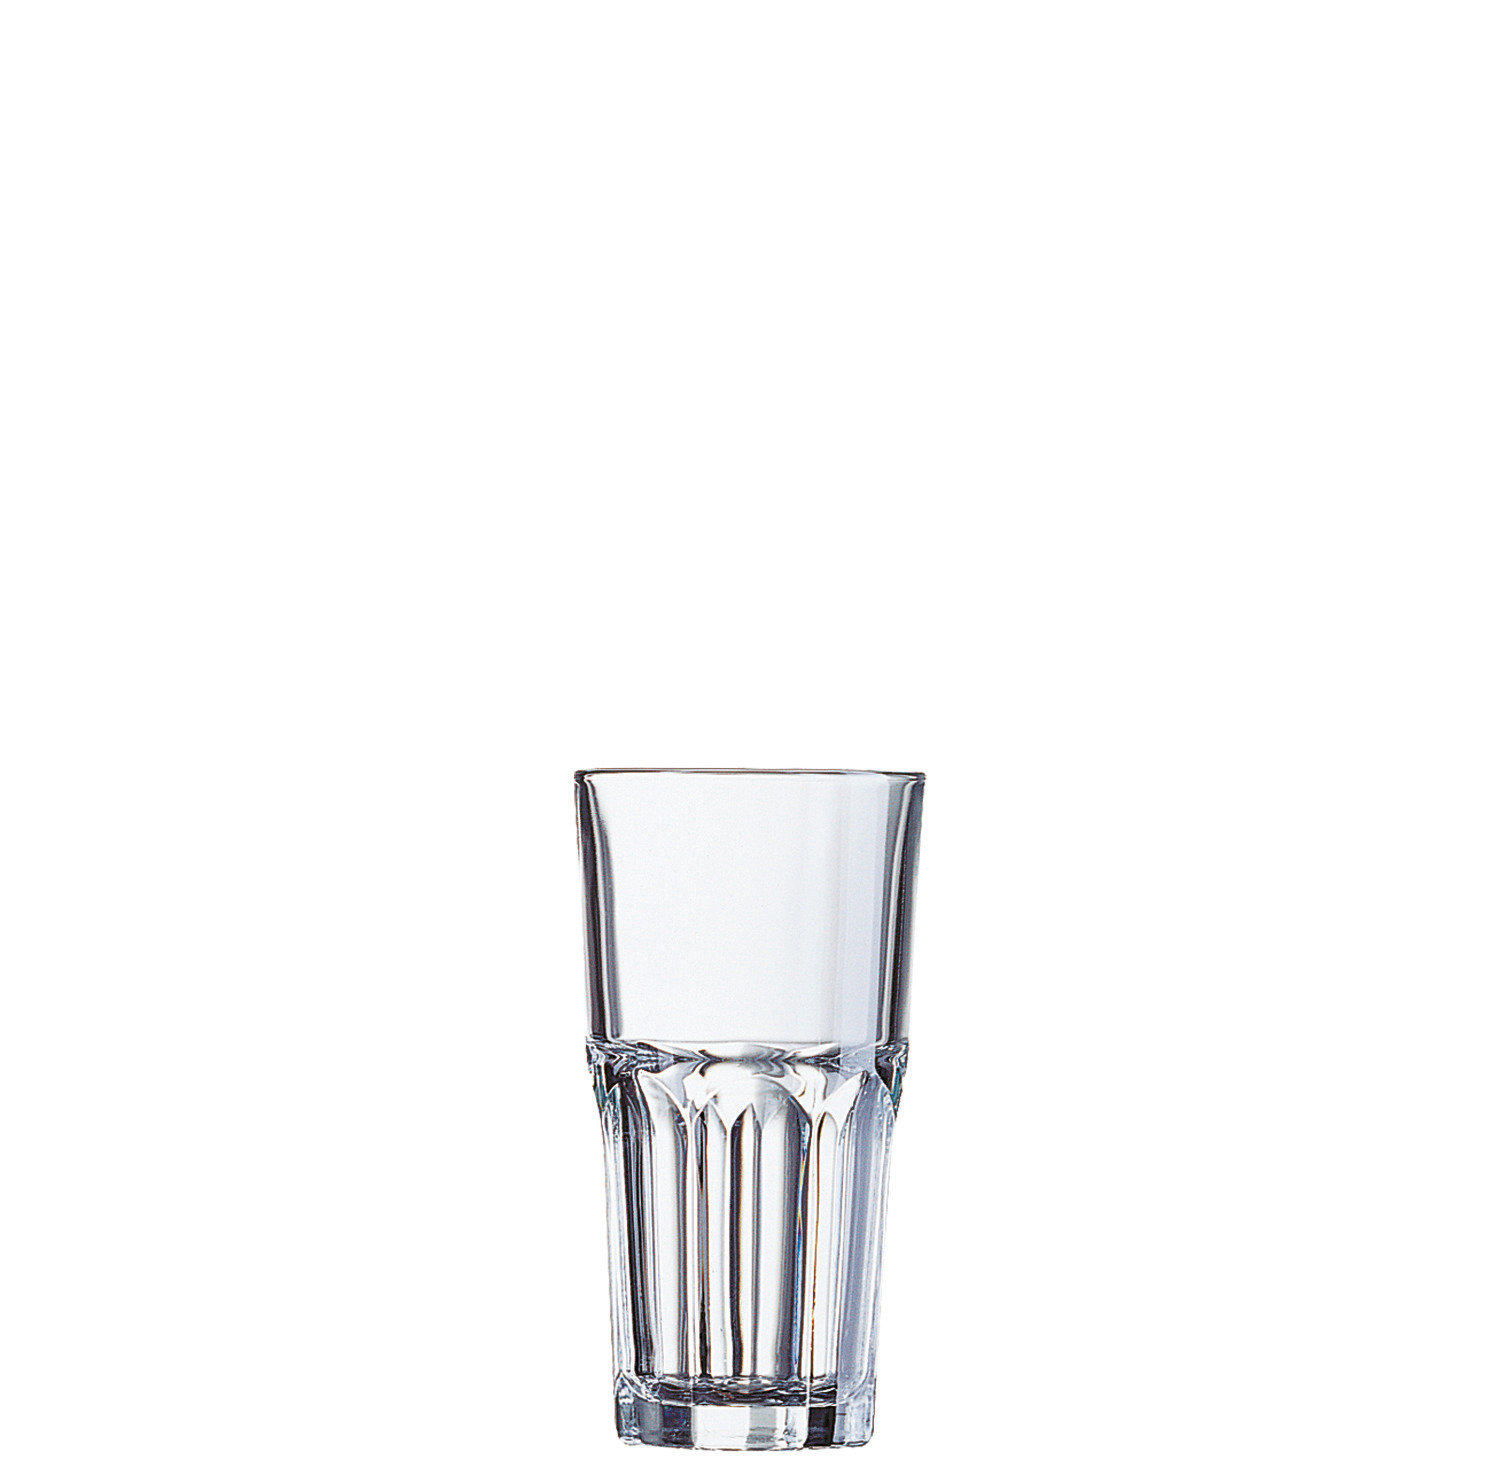 Longdrinkglas "FH31" stapelbar 74 mm / 0,31 l 0,25 /-/ transparent